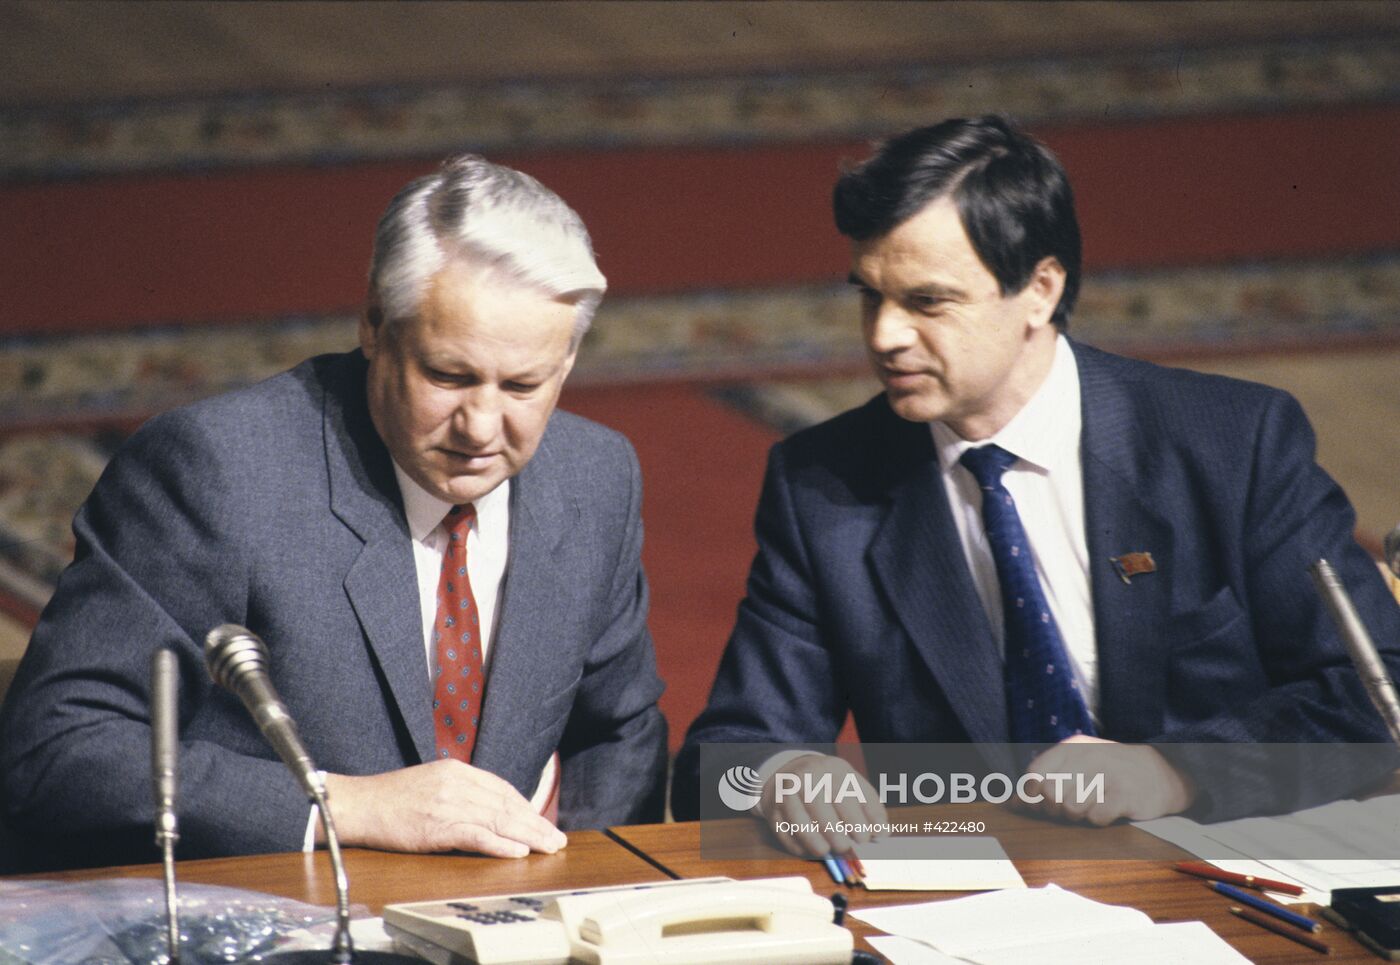 Чрезвычайная сессия Верховного Совета РСФСР